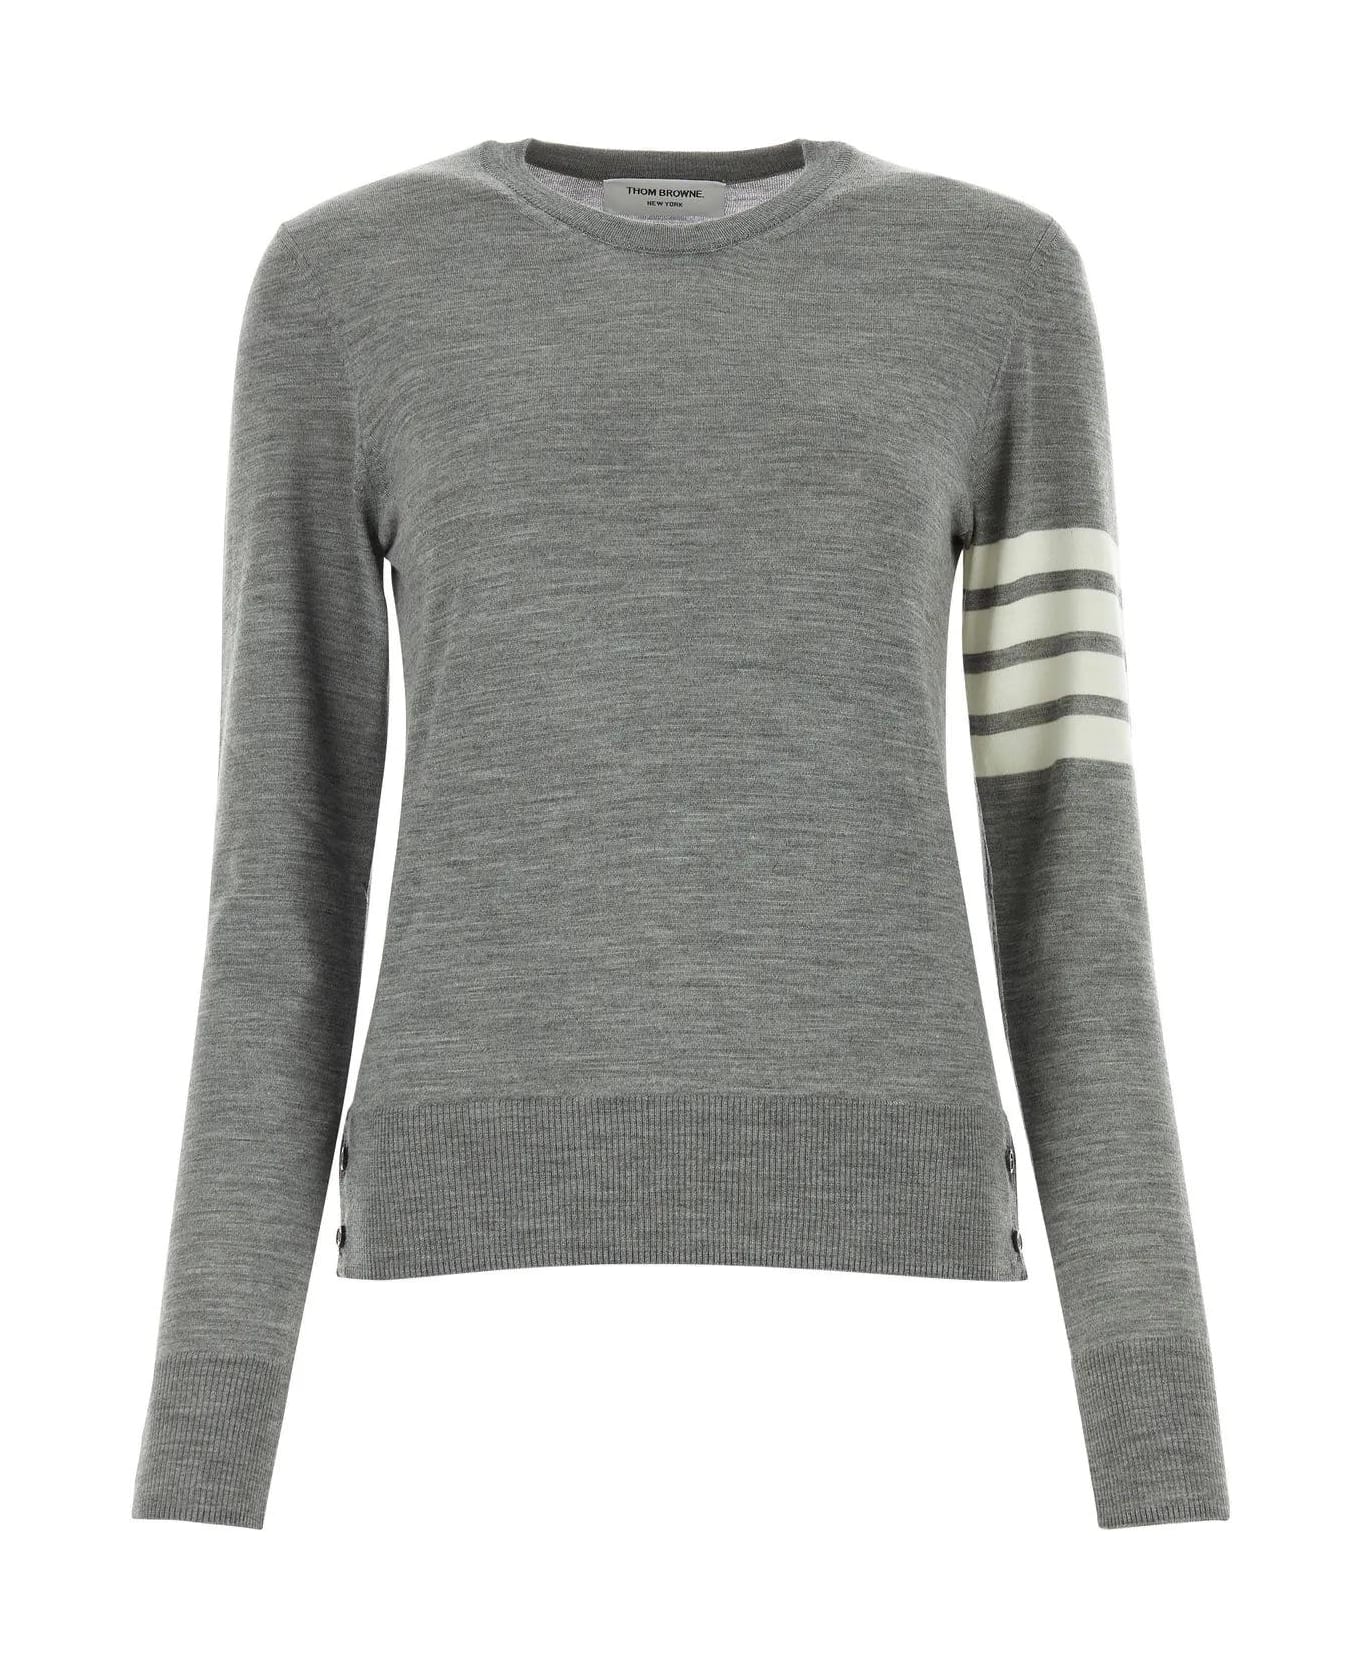 Thom Browne Melange Grey Wool Sweater - Lt Grey